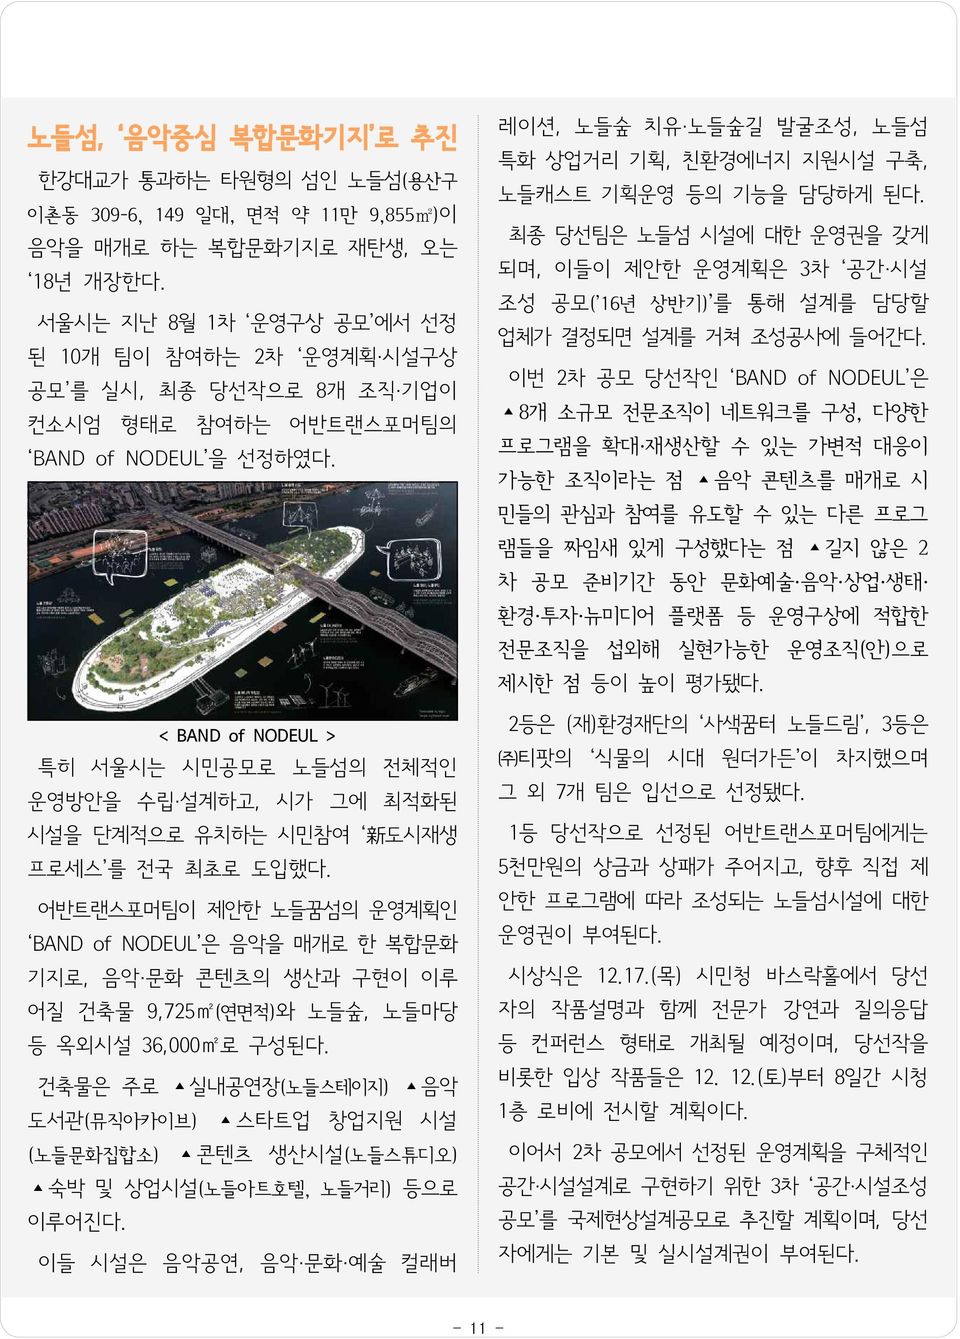 < BAND of NODEUL > 특히 서울시는 시민공모로 노들섬의 전체적인 운영방안을 수립 설계하고, 시가 그에 최적화된 시설을 단계적으로 유치하는 시민참여 新 도시재생 프로세스 를 전국 최초로 도입했다.